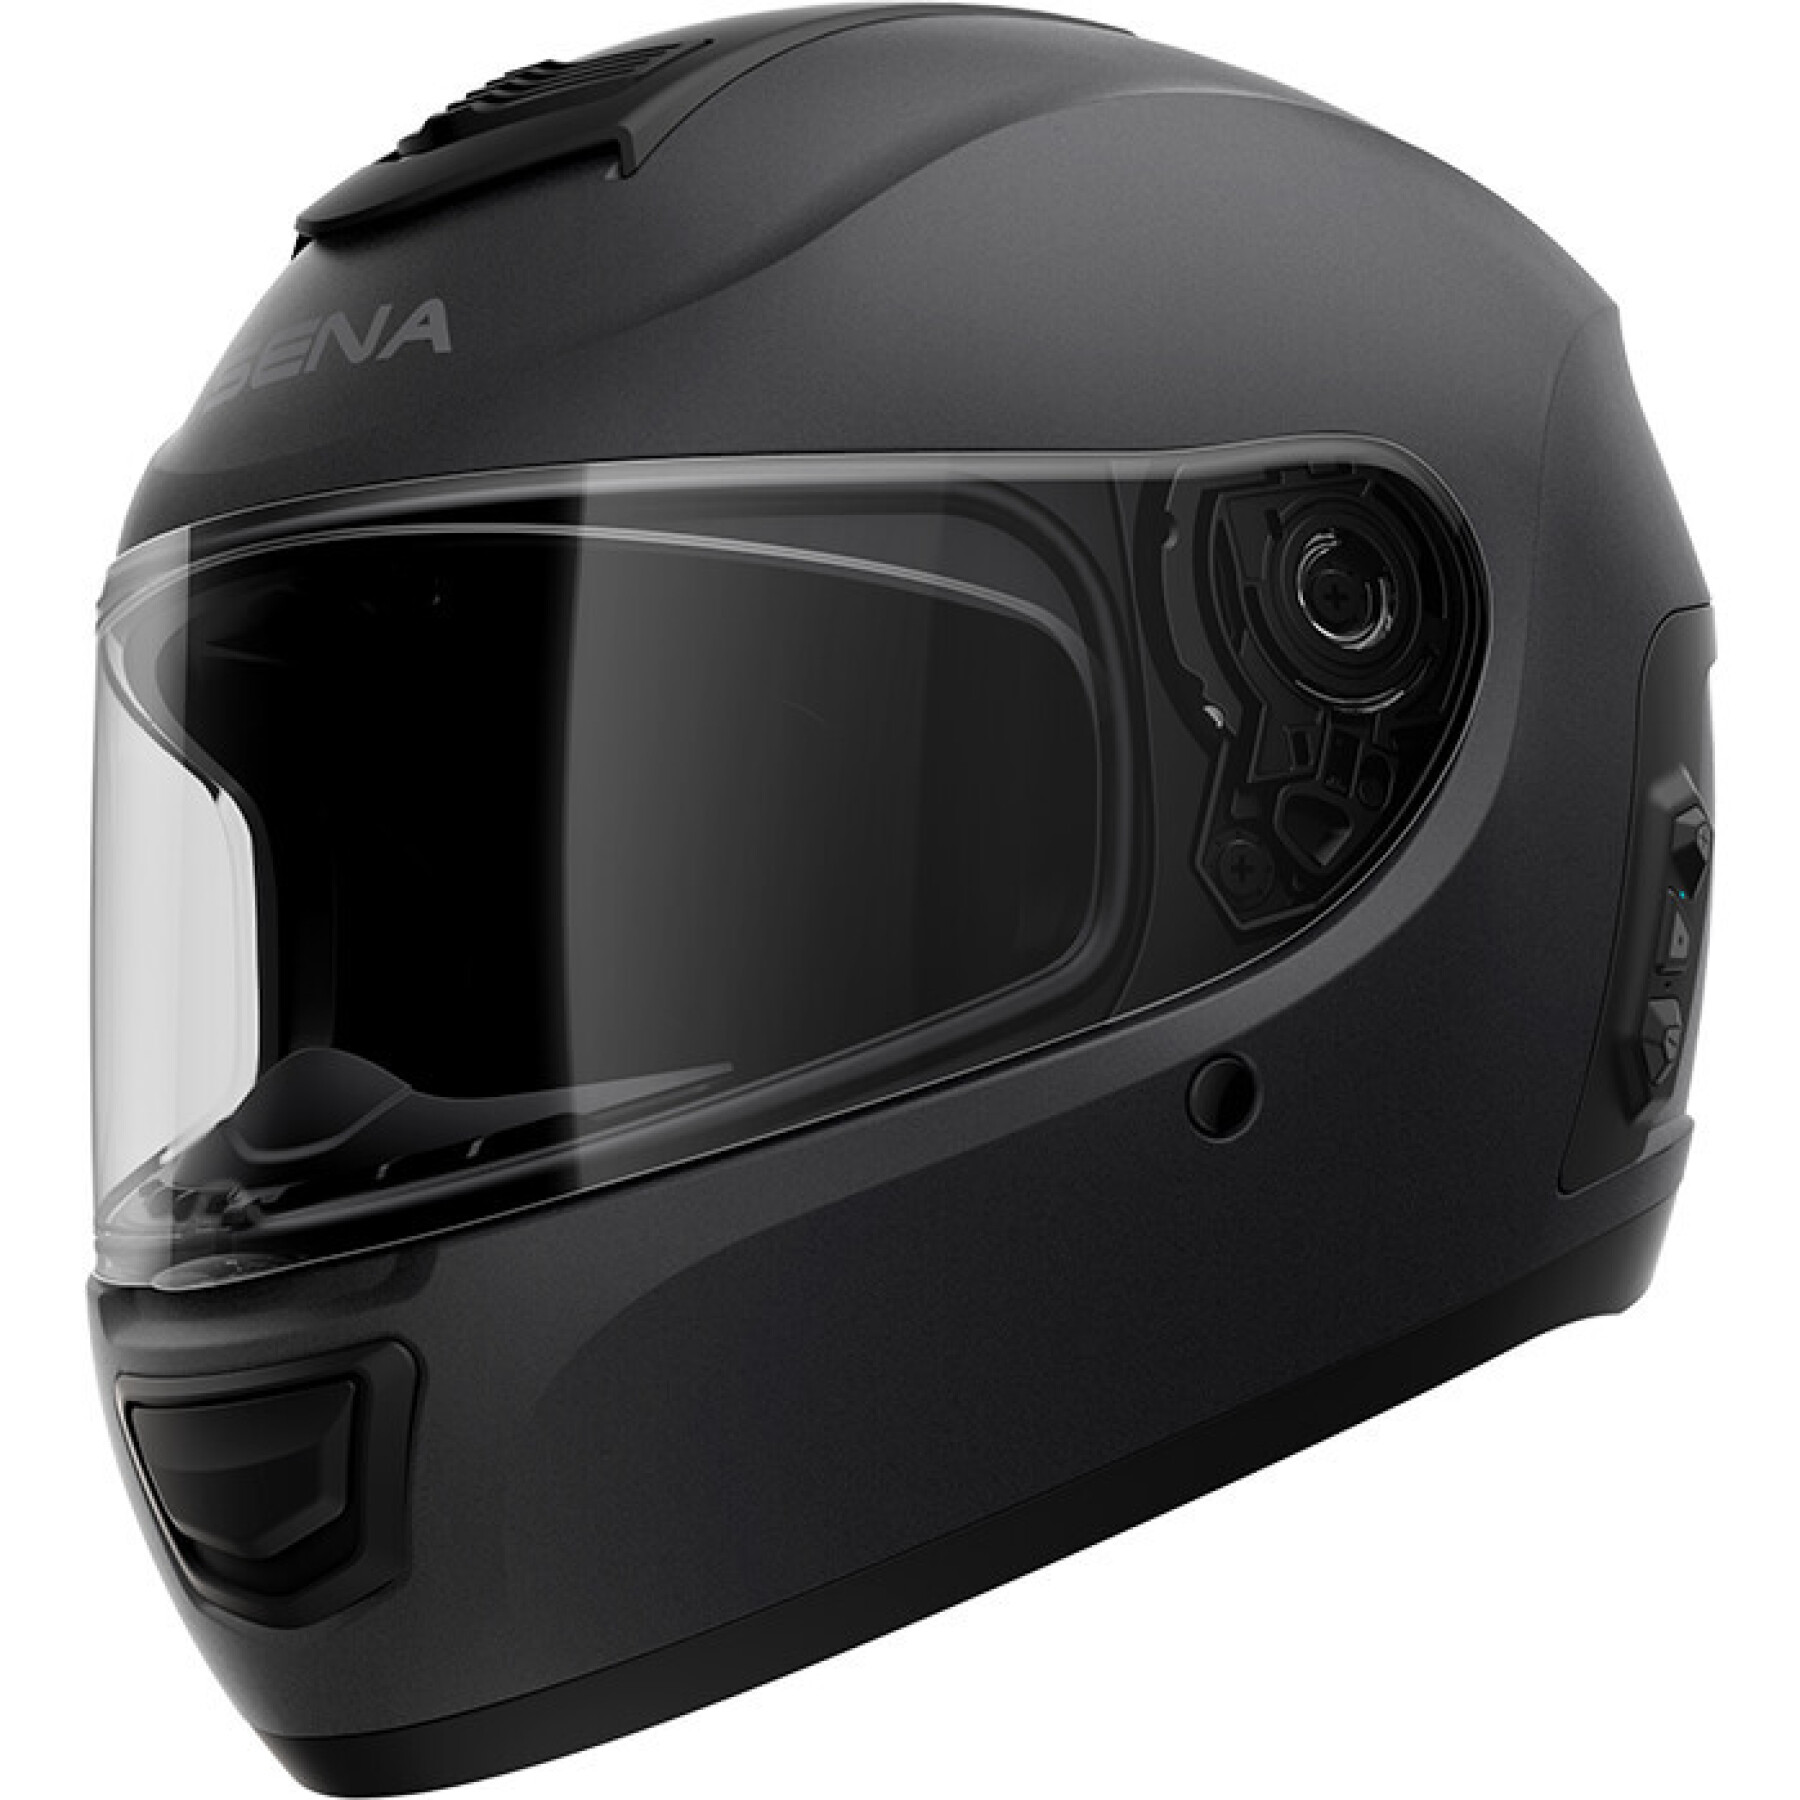 Full face motorcycle helmet Sena Momentum Evo